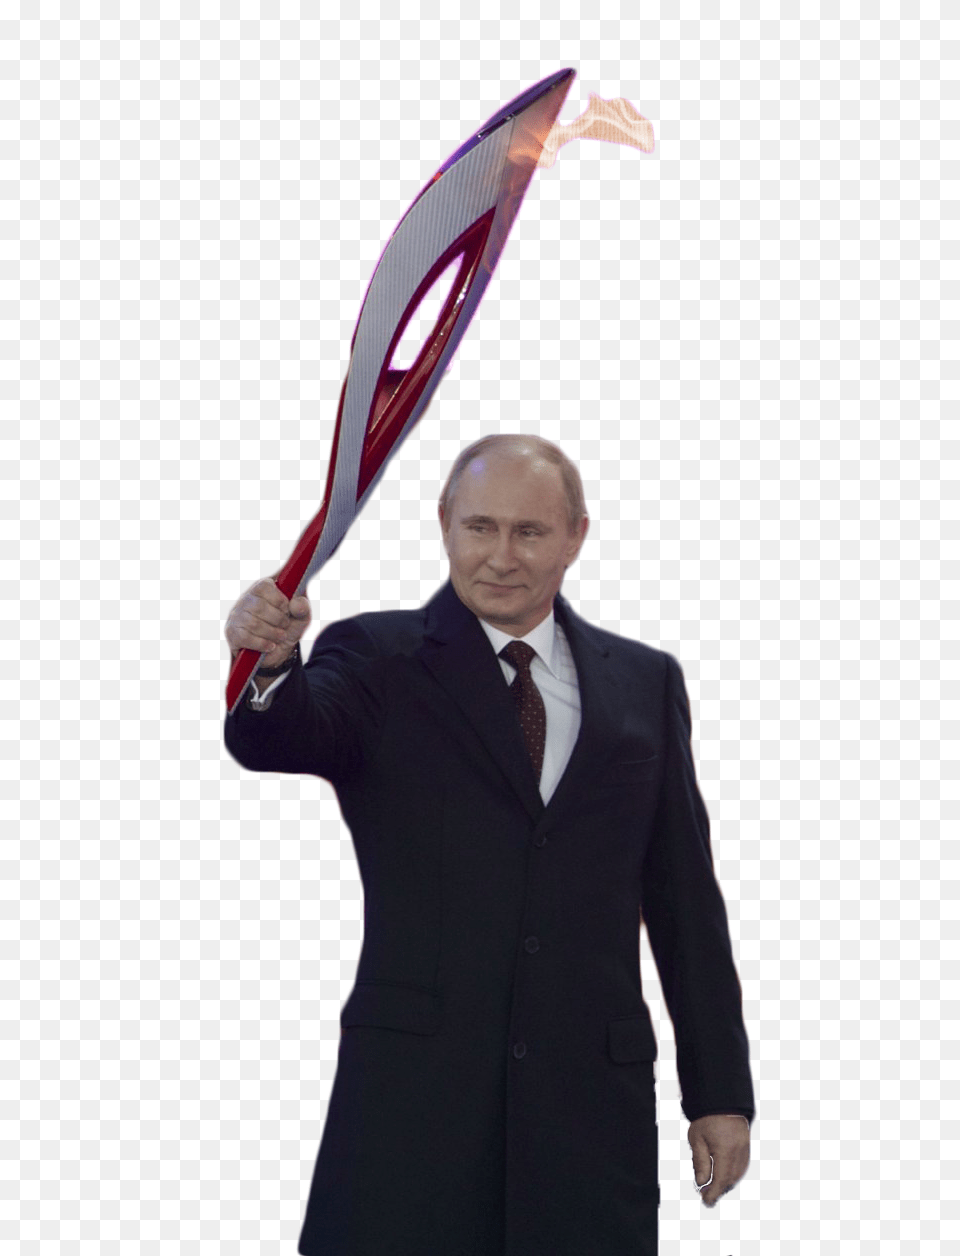 Celebrities In Vladimir Putin, Accessories, Tie, Suit, Portrait Png